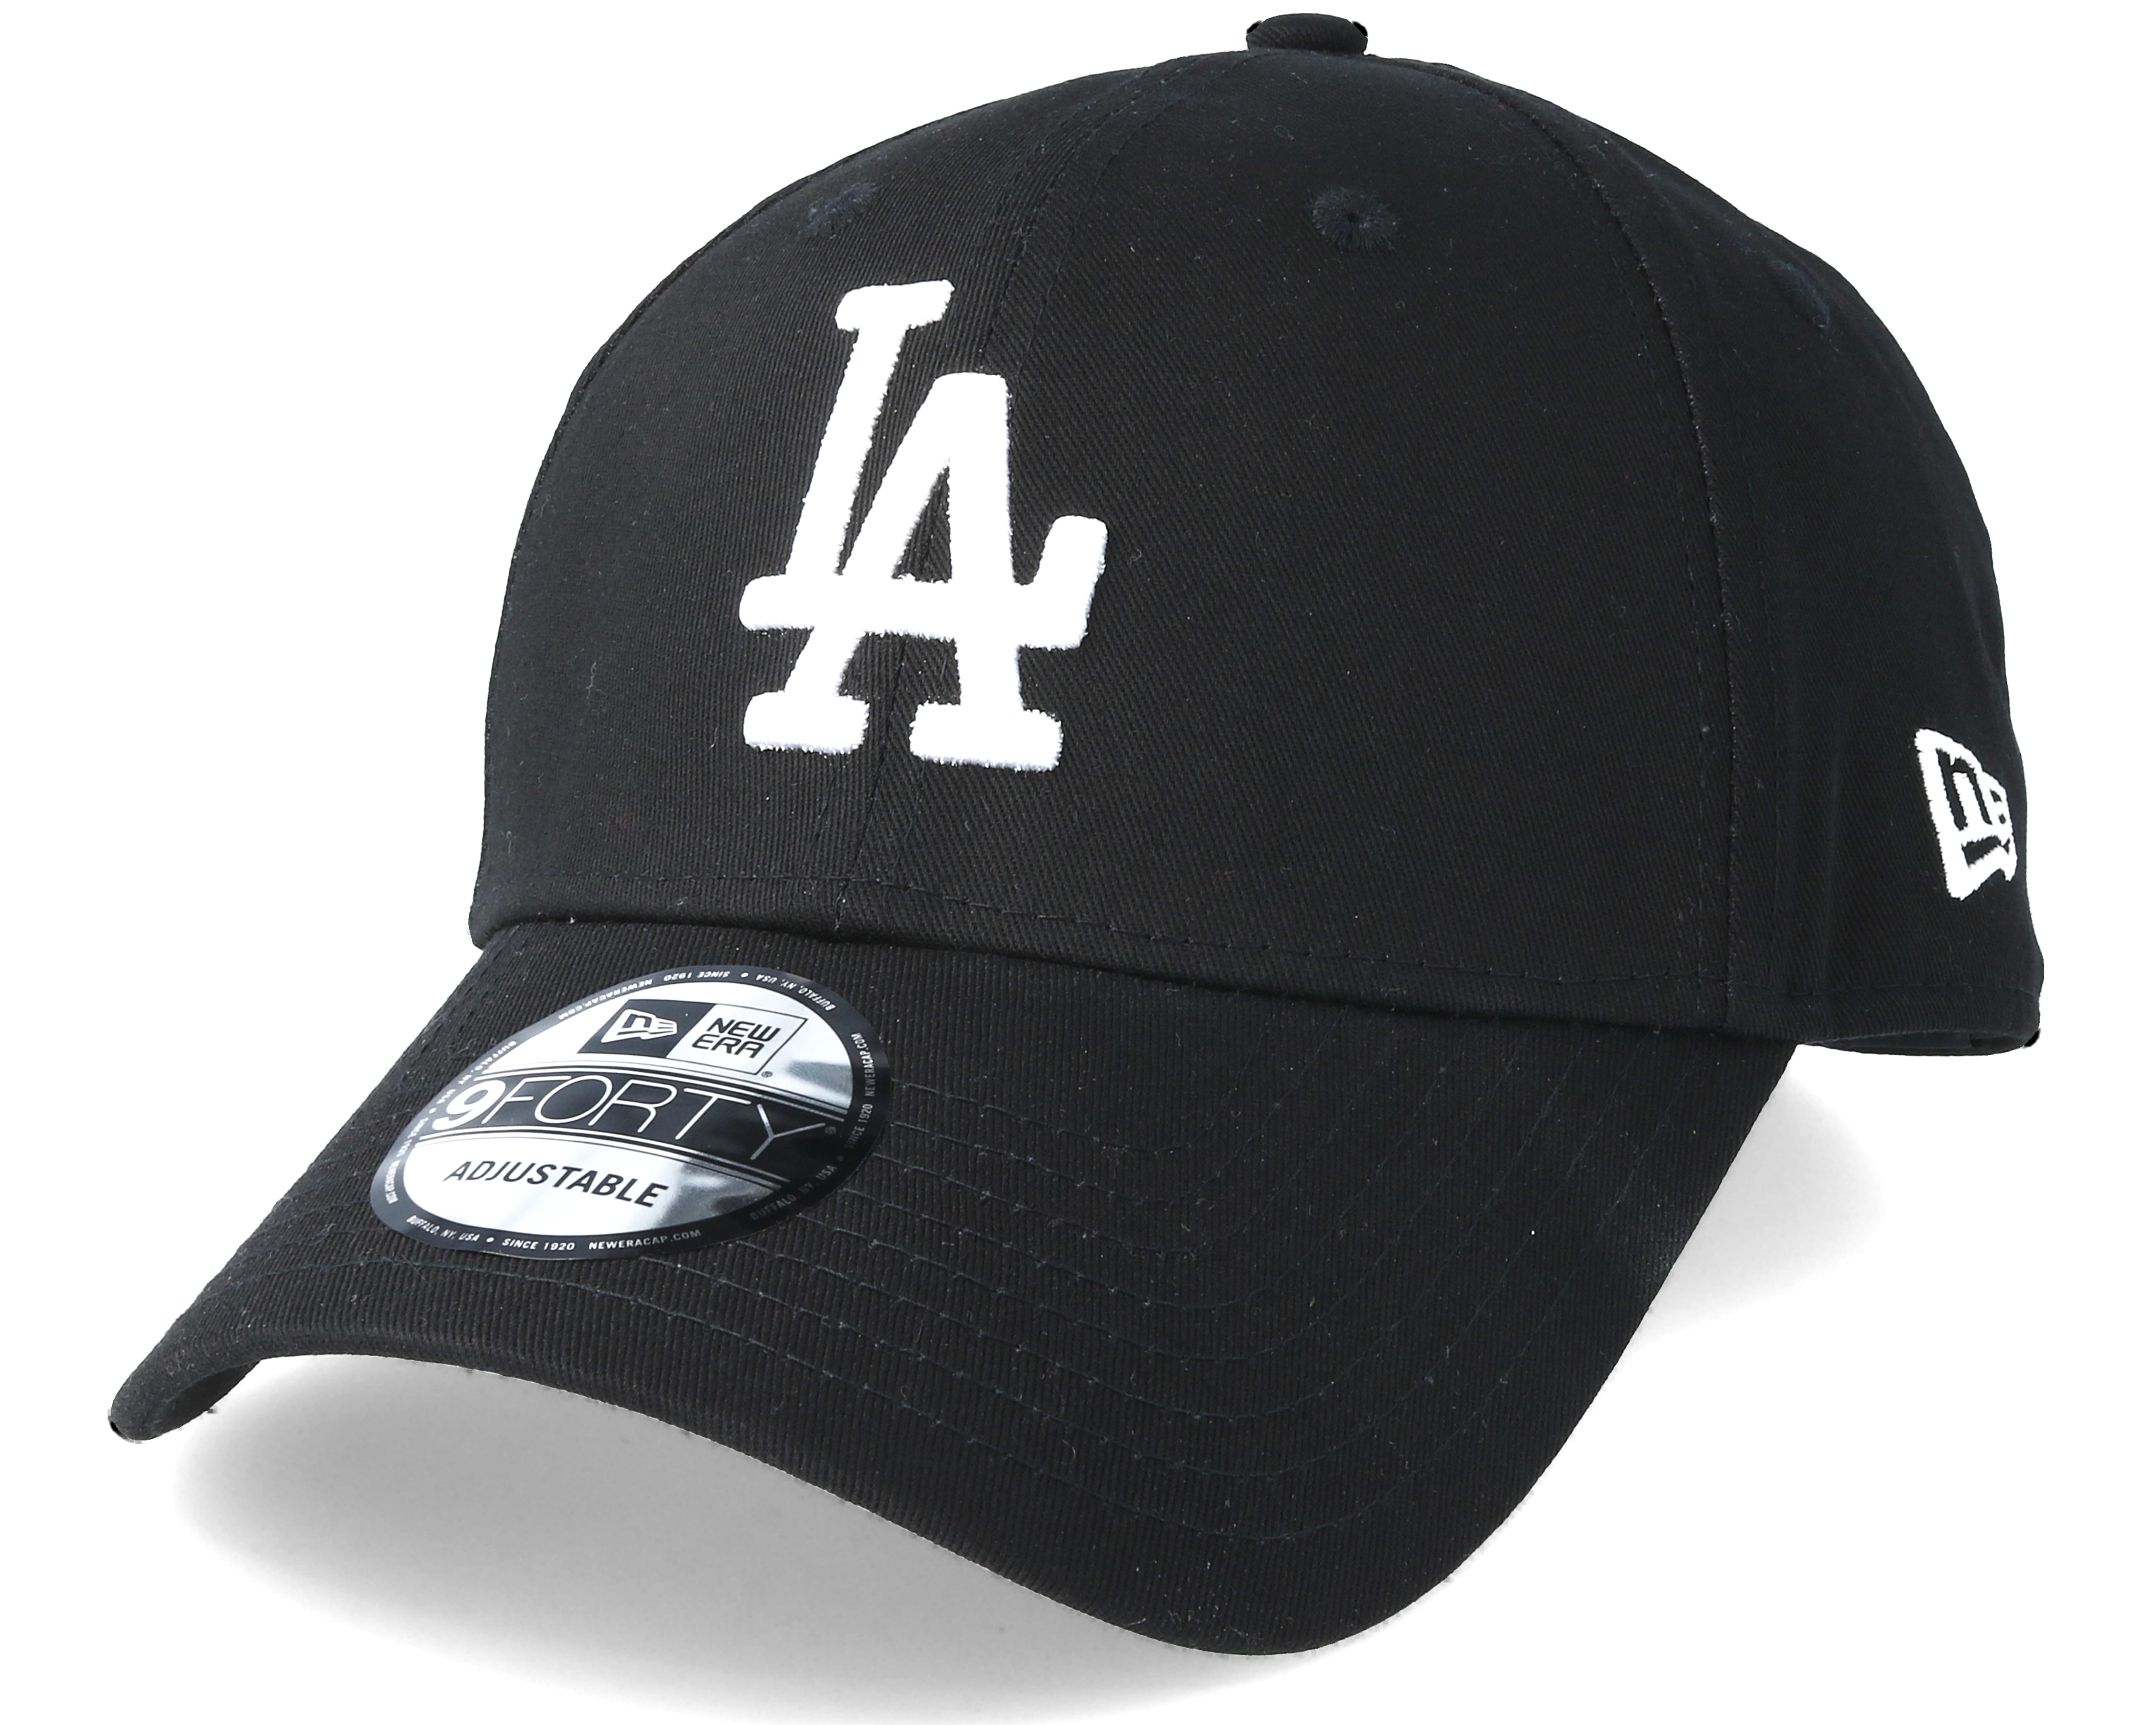 LOS ANGELES Snapback Cap Hat LA City Caps Hats Black OSFM Adjustable NWT 